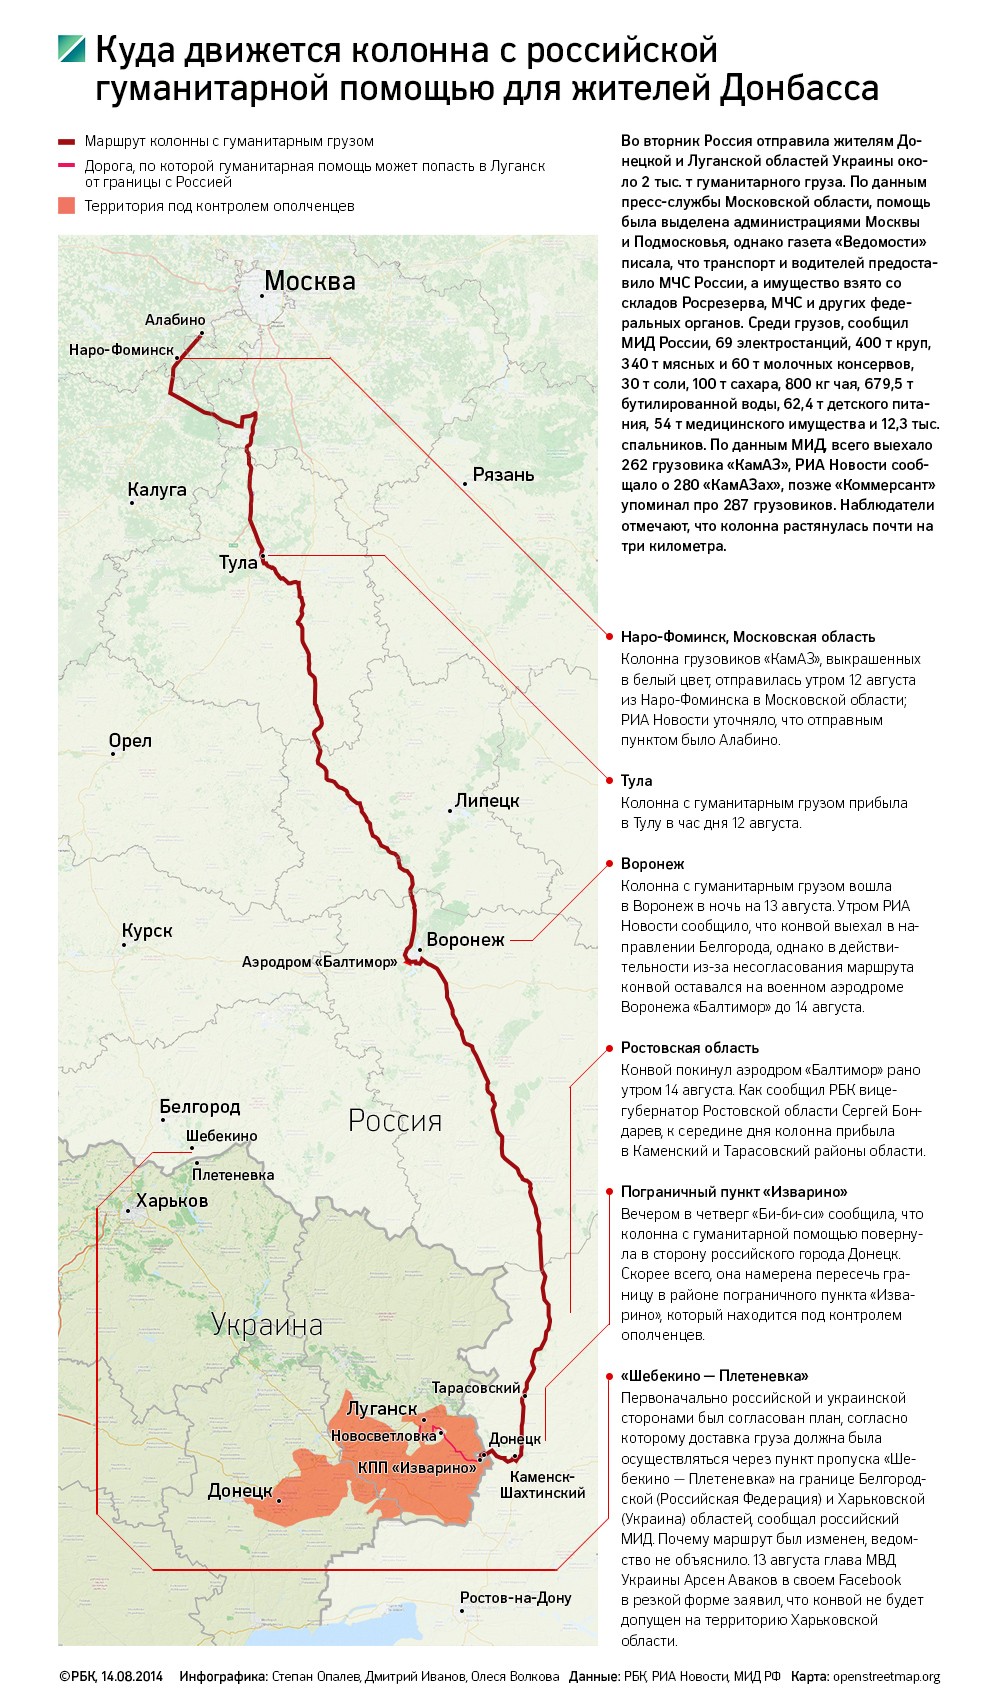 Красный Крест нашел российский конвой у границы с Украиной